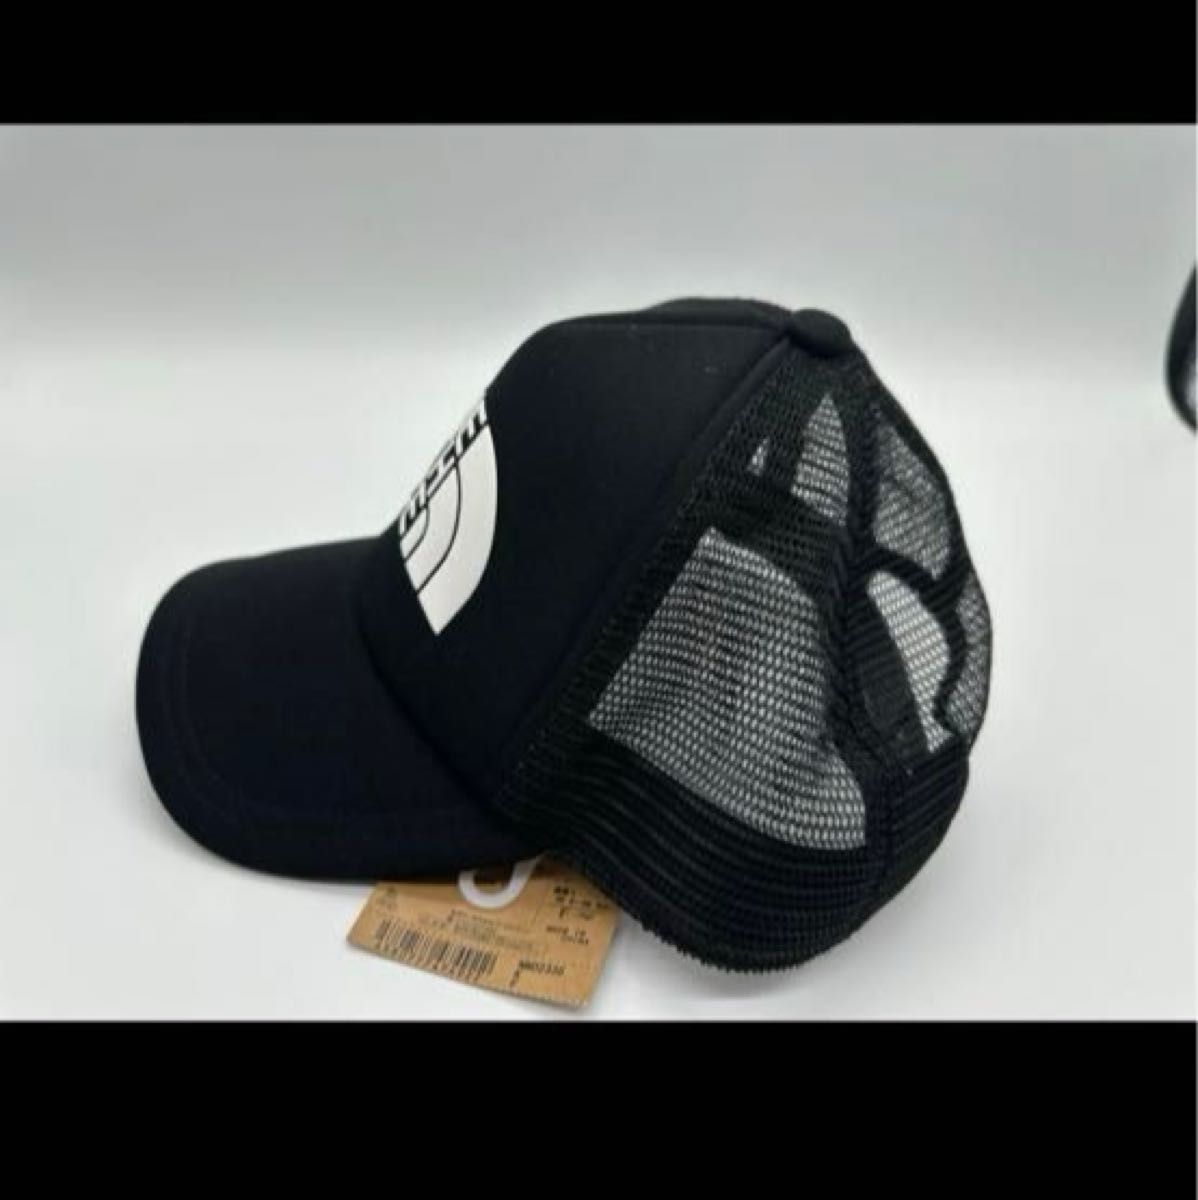 新品ノースフェイス ロゴメッシュキャップ 帽子 NN02335ブラック